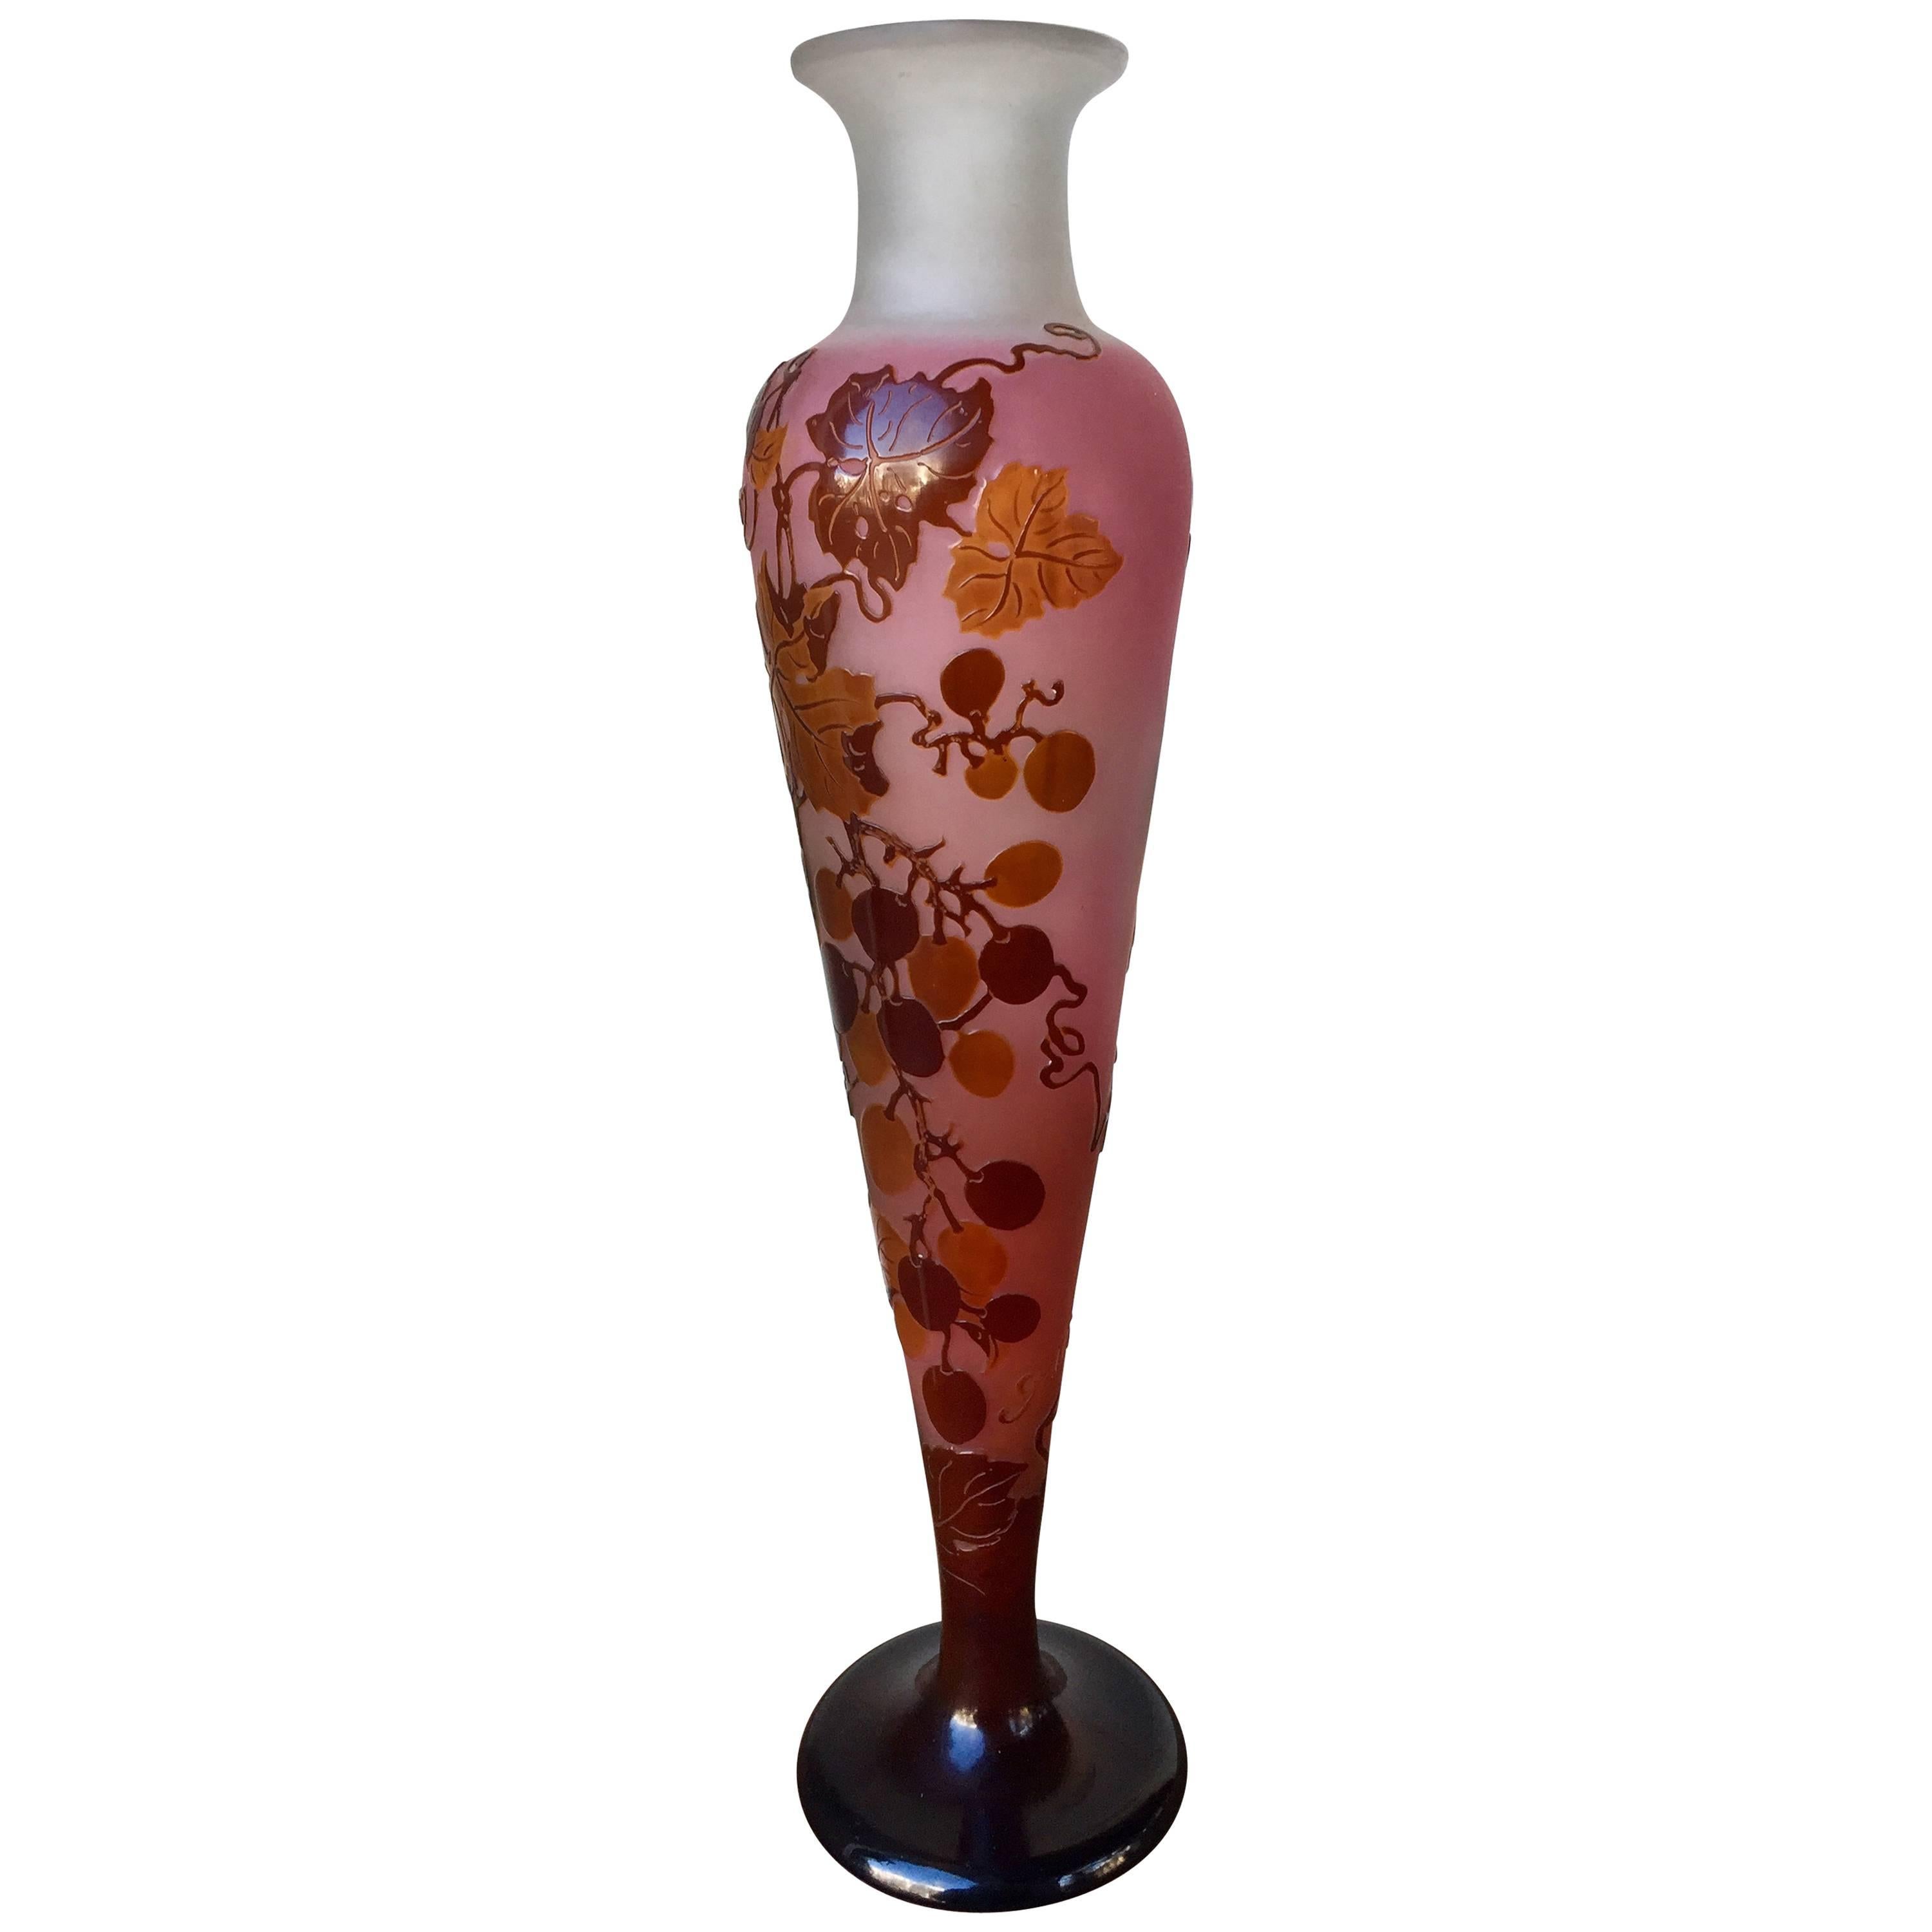 Emile Galle Art Nouveau Vase, Nancy Art